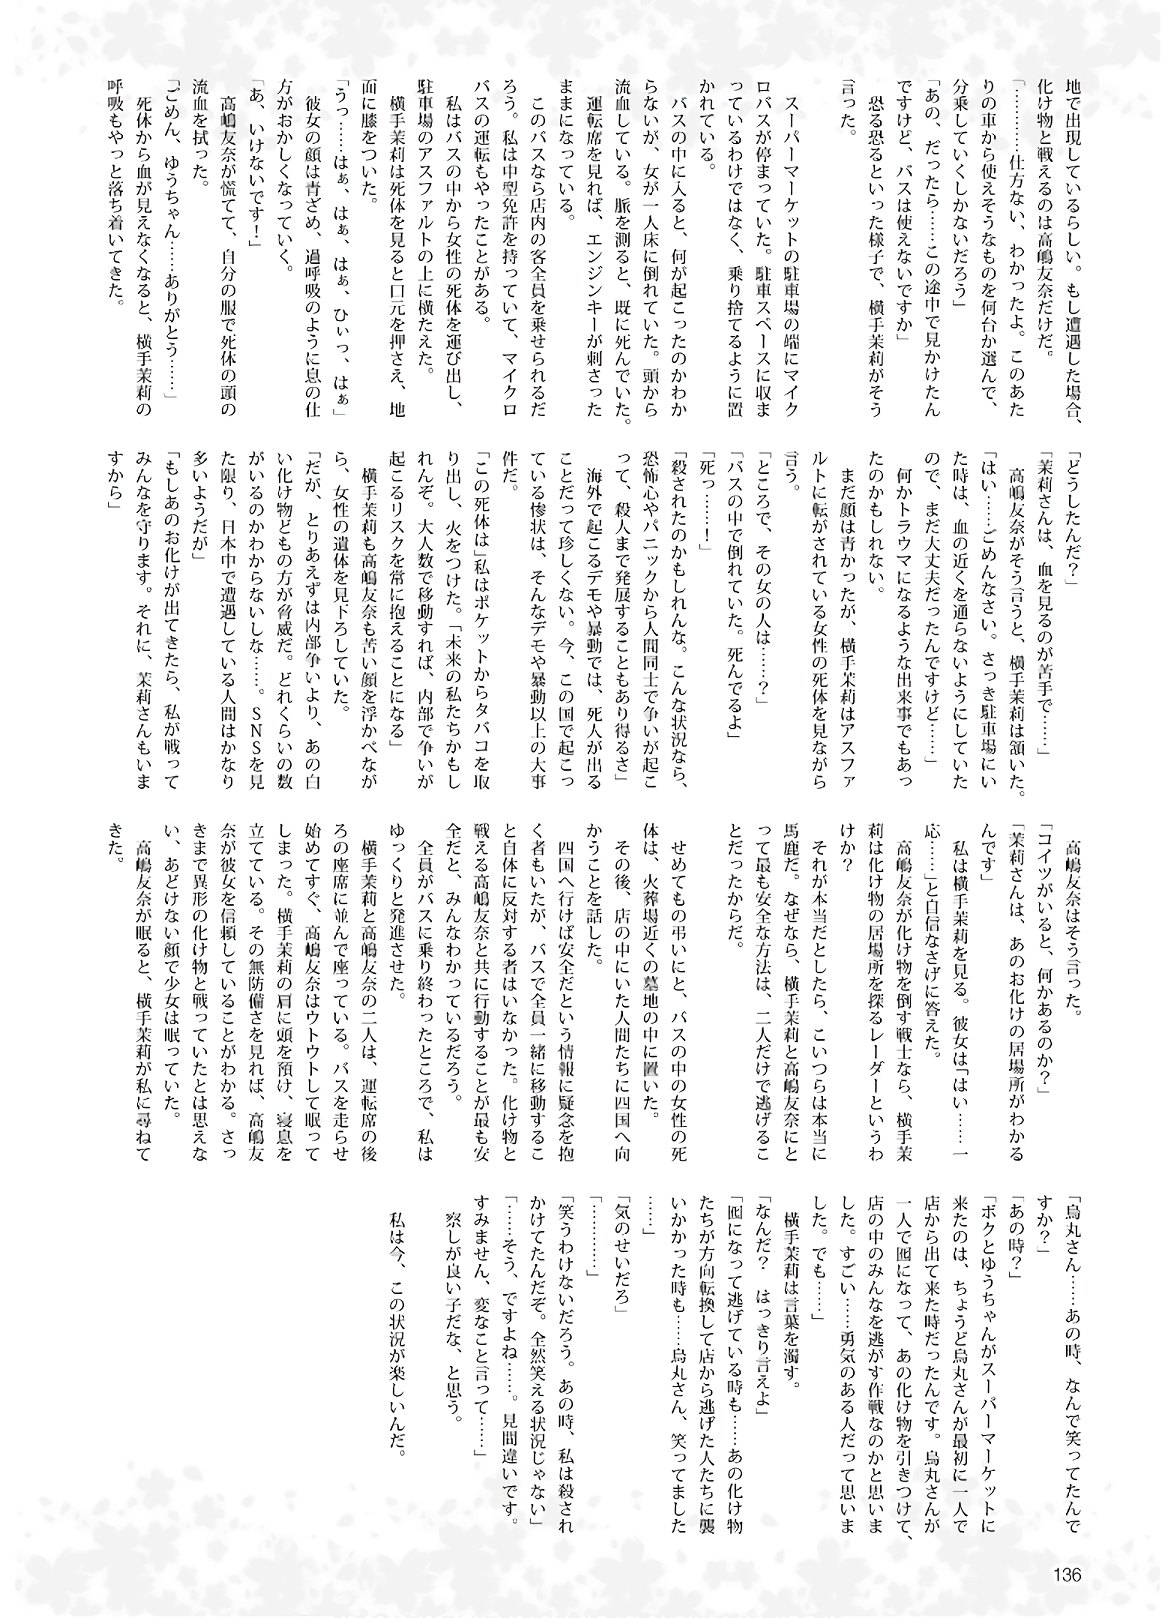 Dengeki G's Magazine #286 - May 2021 133